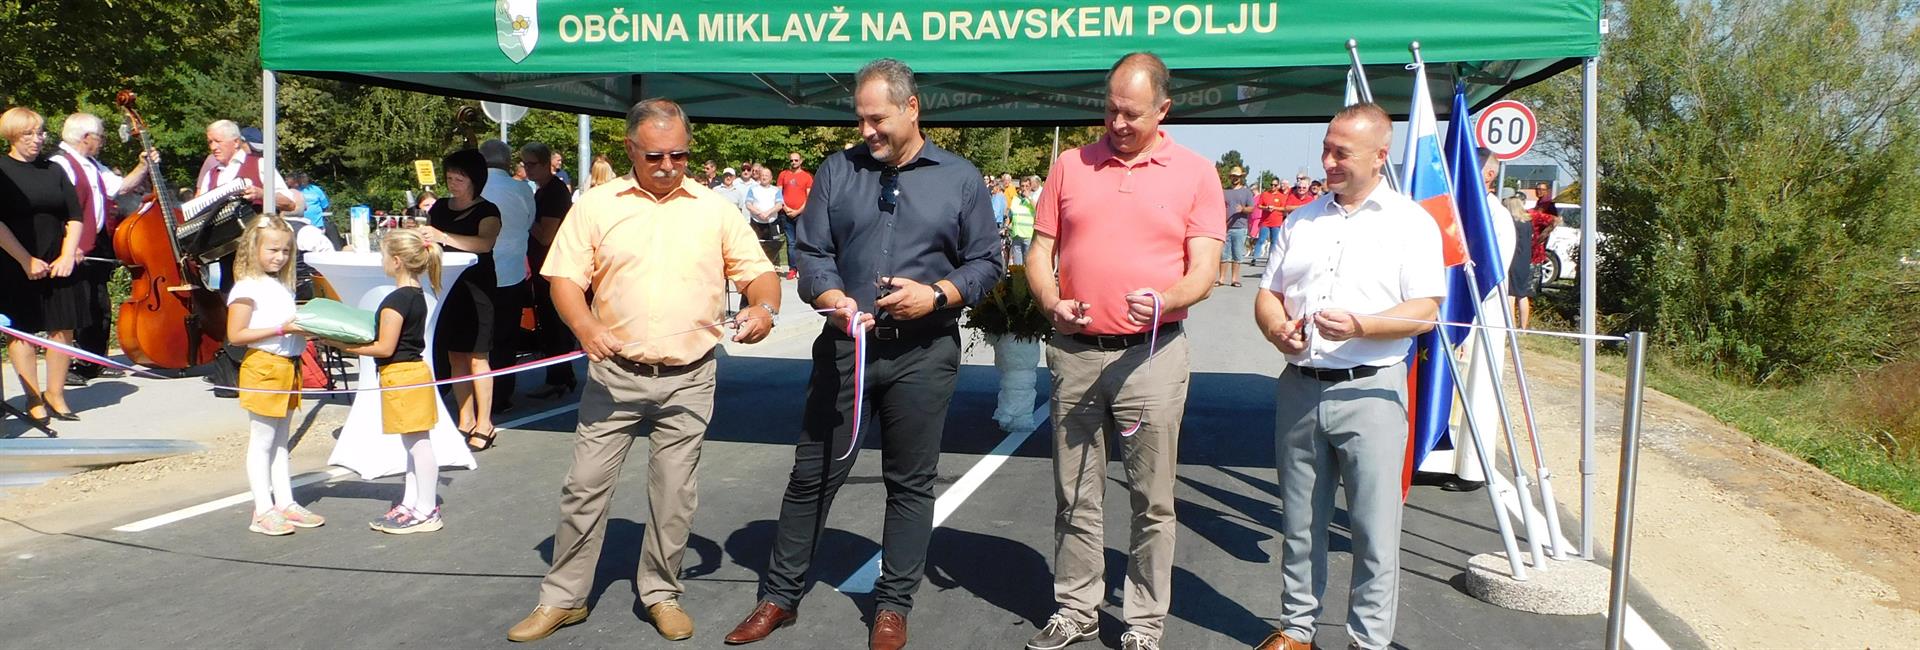 Svečano odprtje povezovalne ceste Miklavž - Dobrovce, 11. 9. 2021